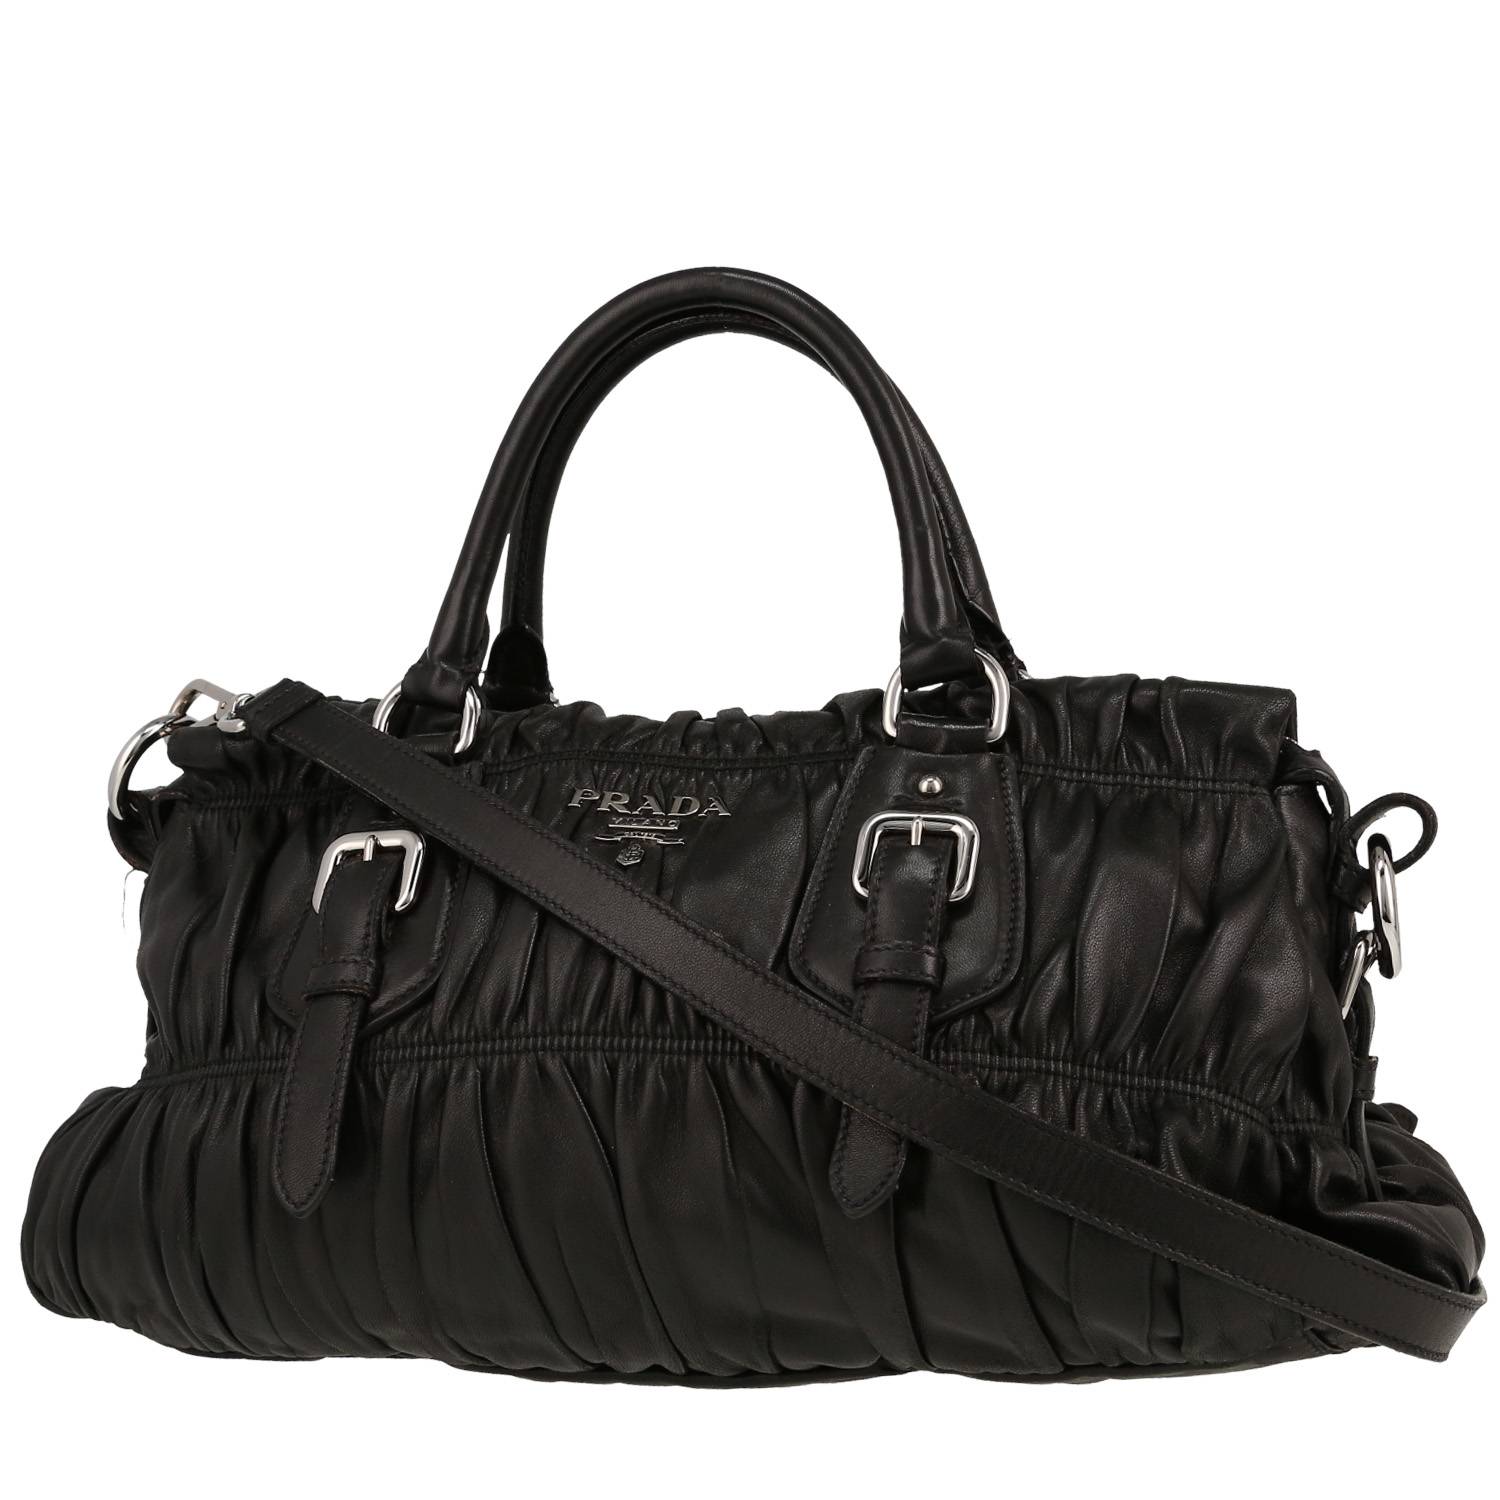 Handbag In Black Embossed Leather